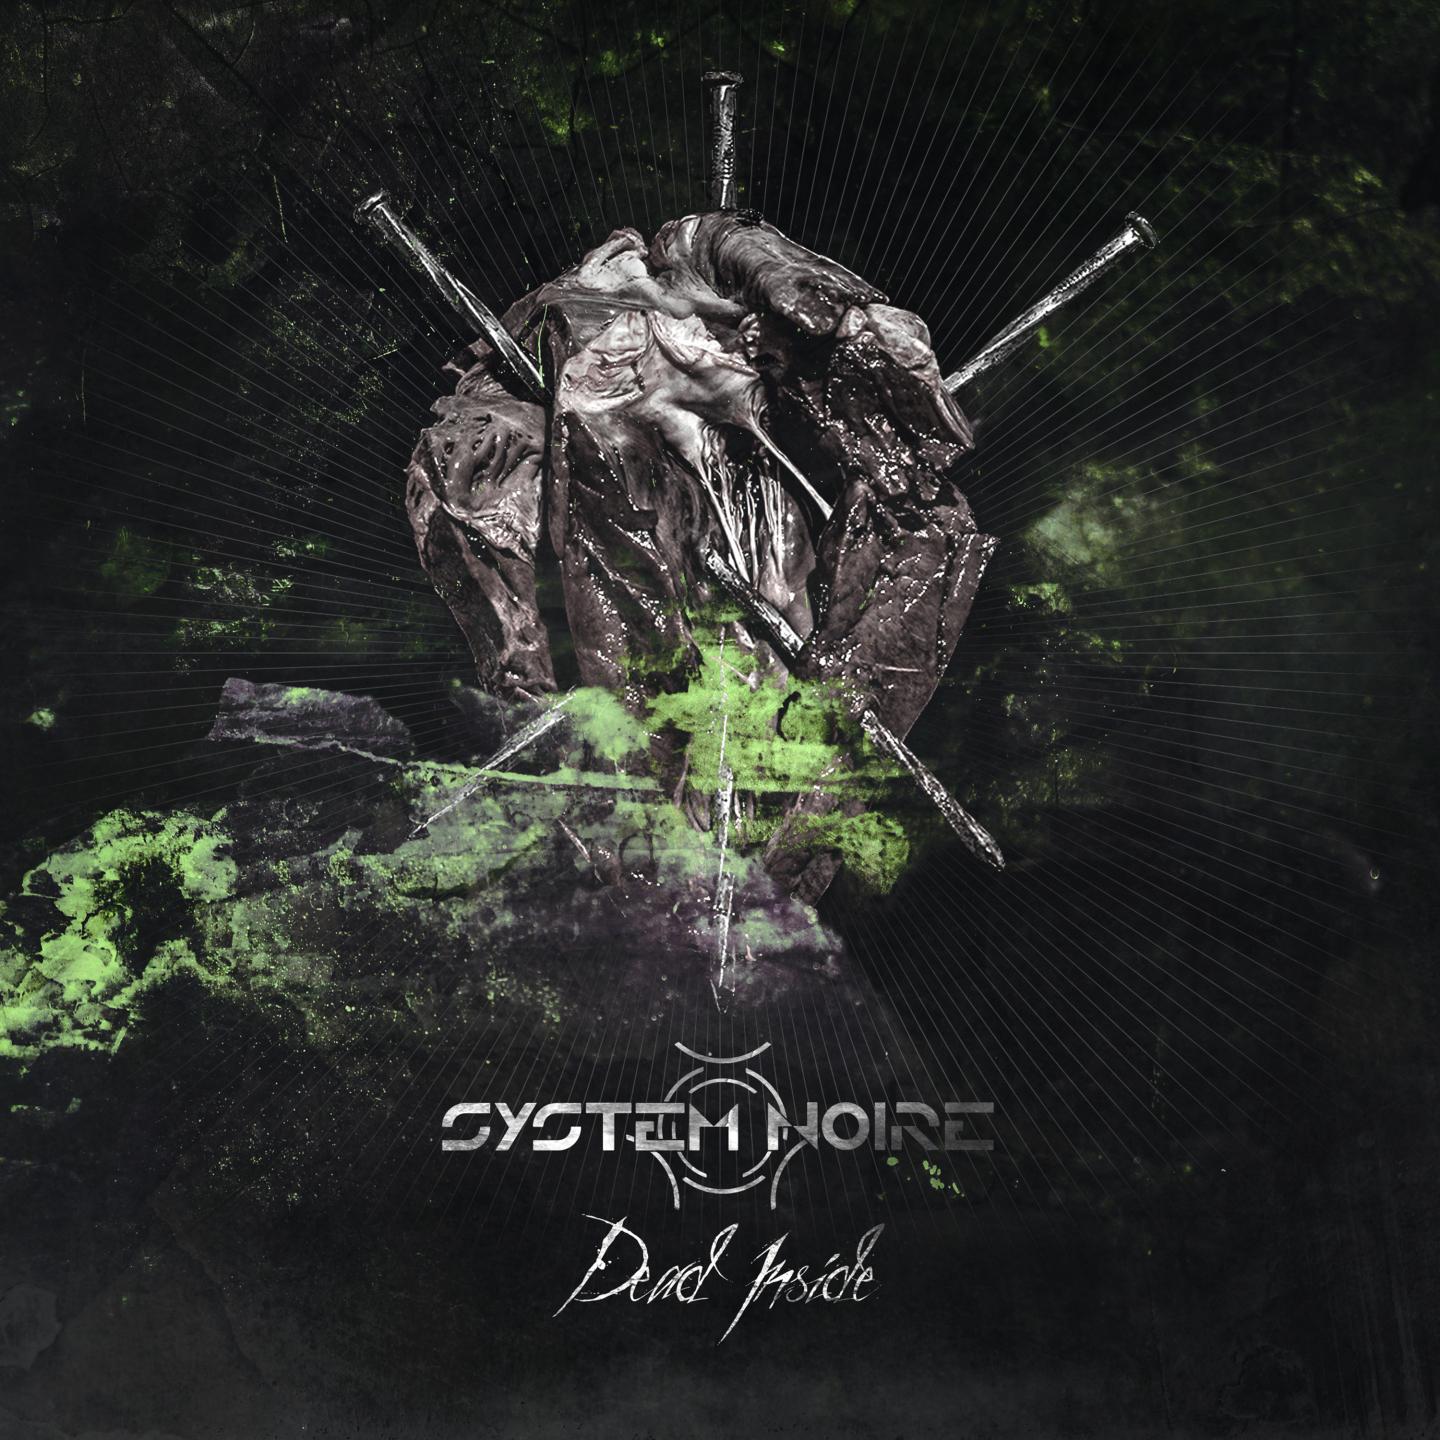 System Noire - Dead Inside (Reactor7x Remix)